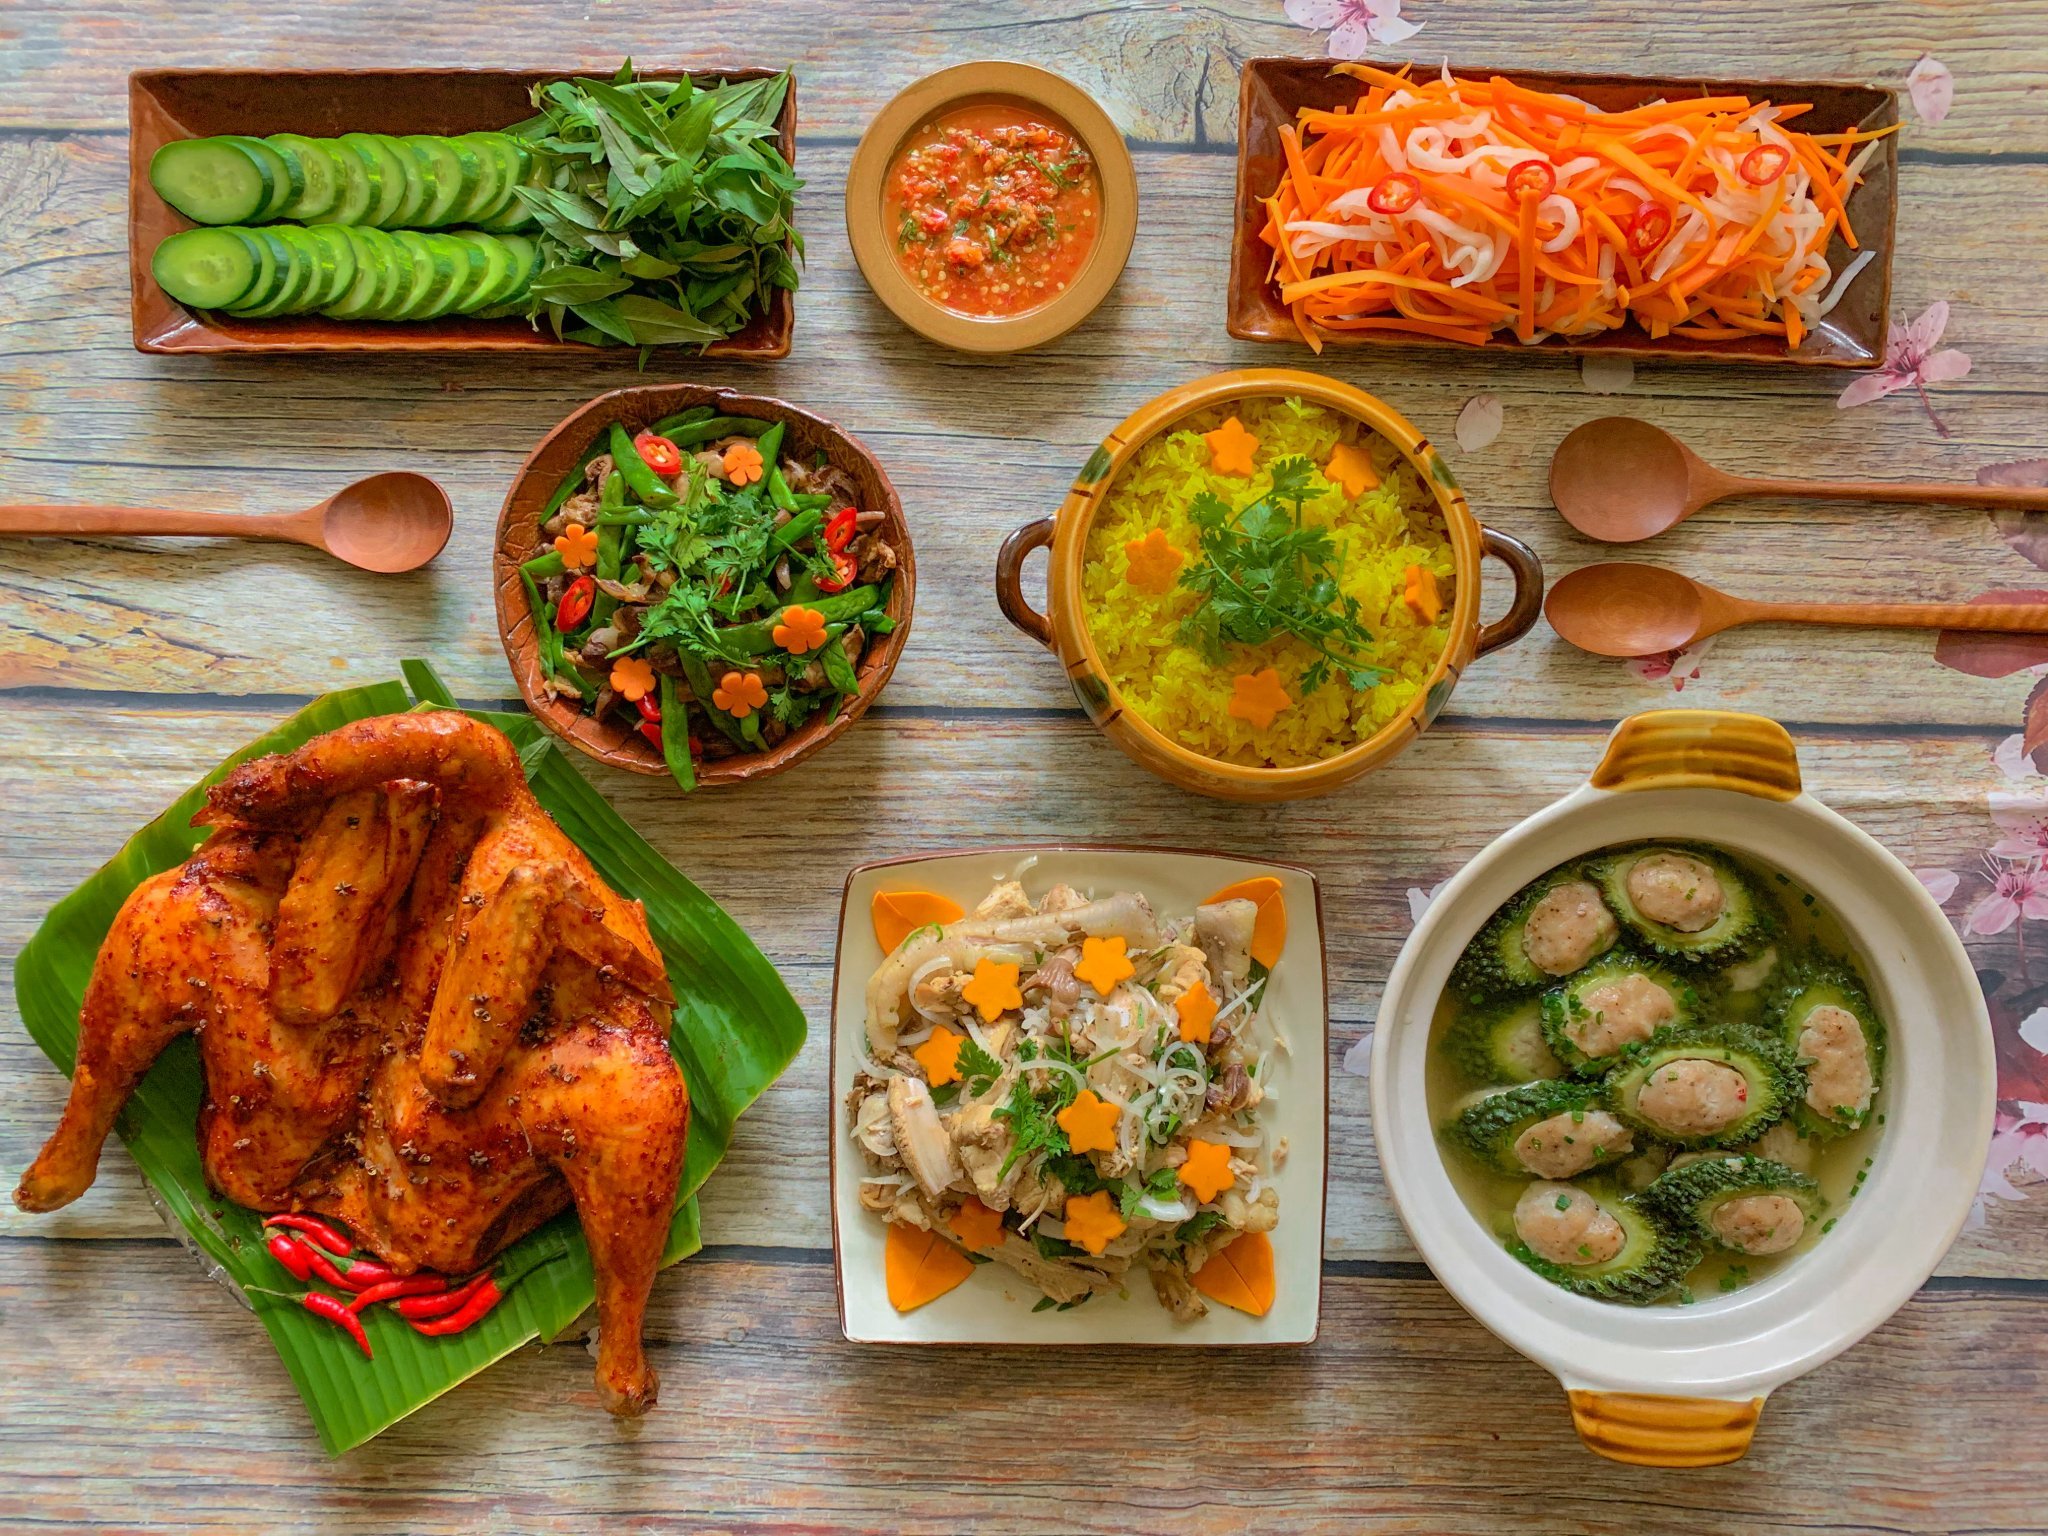 thực đơn cơm nhà,cách nấu cơm,mẹ đảm,Sài Gòn,món ngon mỗi ngày